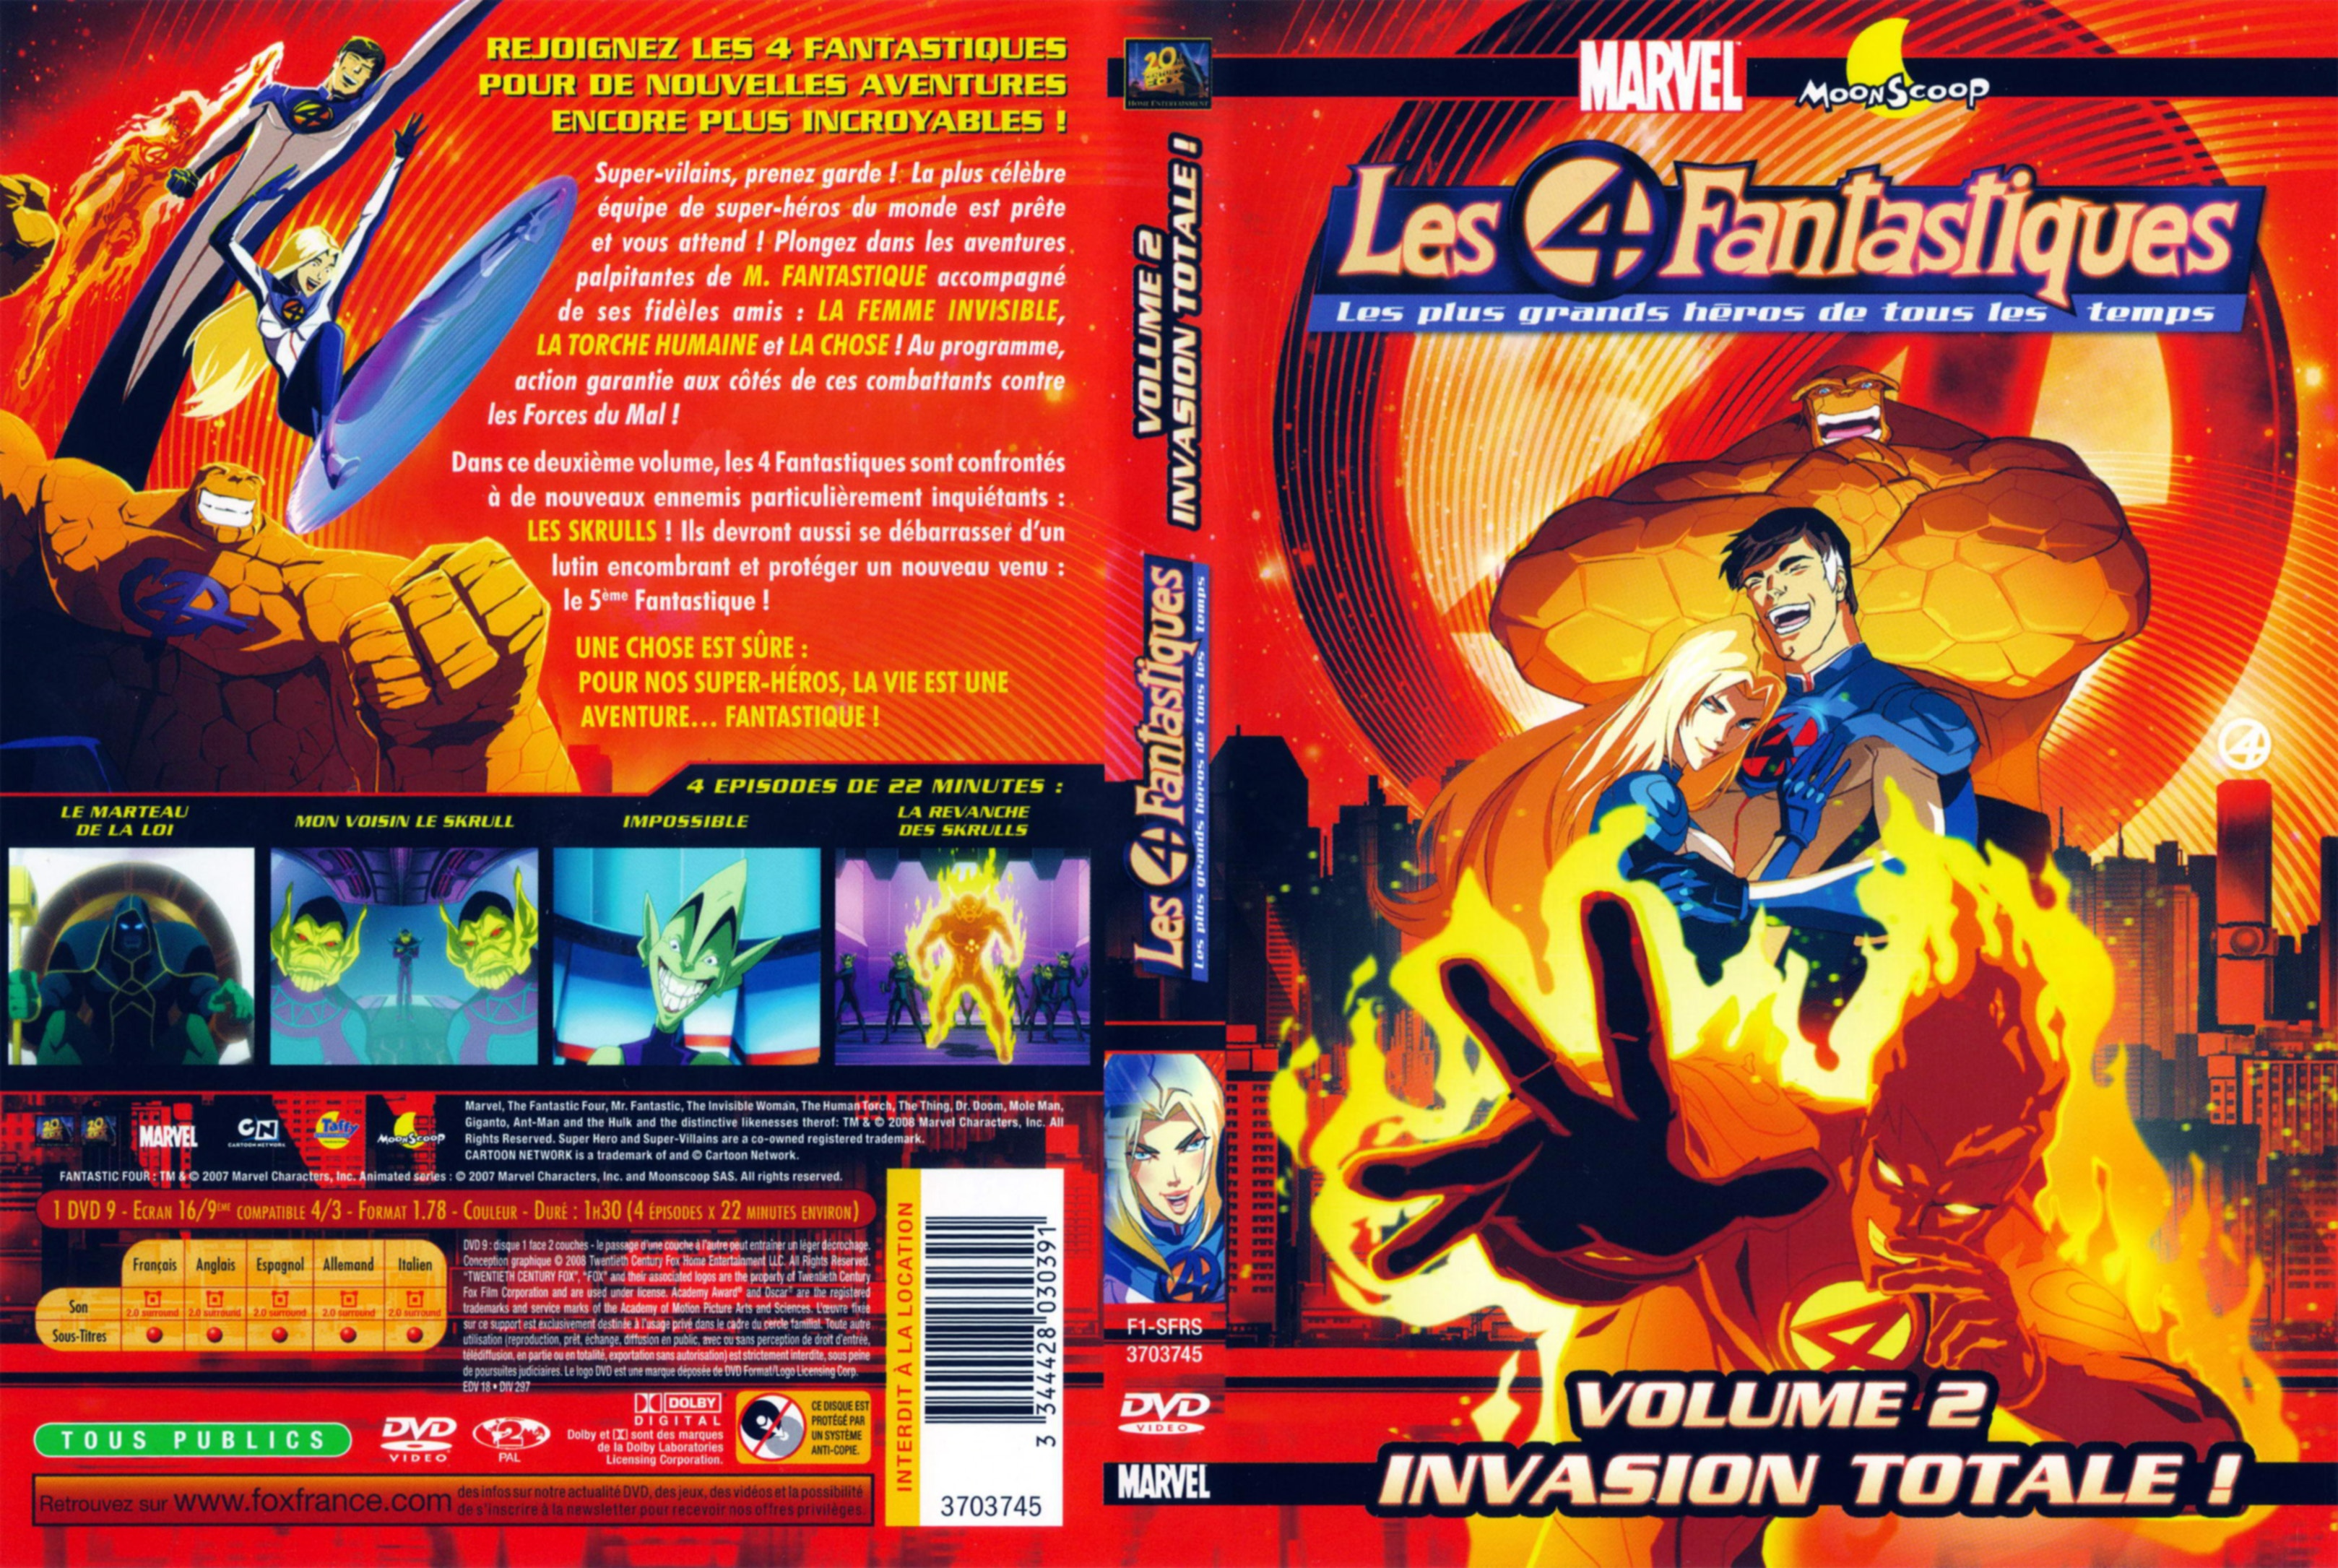 Jaquette DVD Les 4 fantastiques vol 2 - Invasion totale